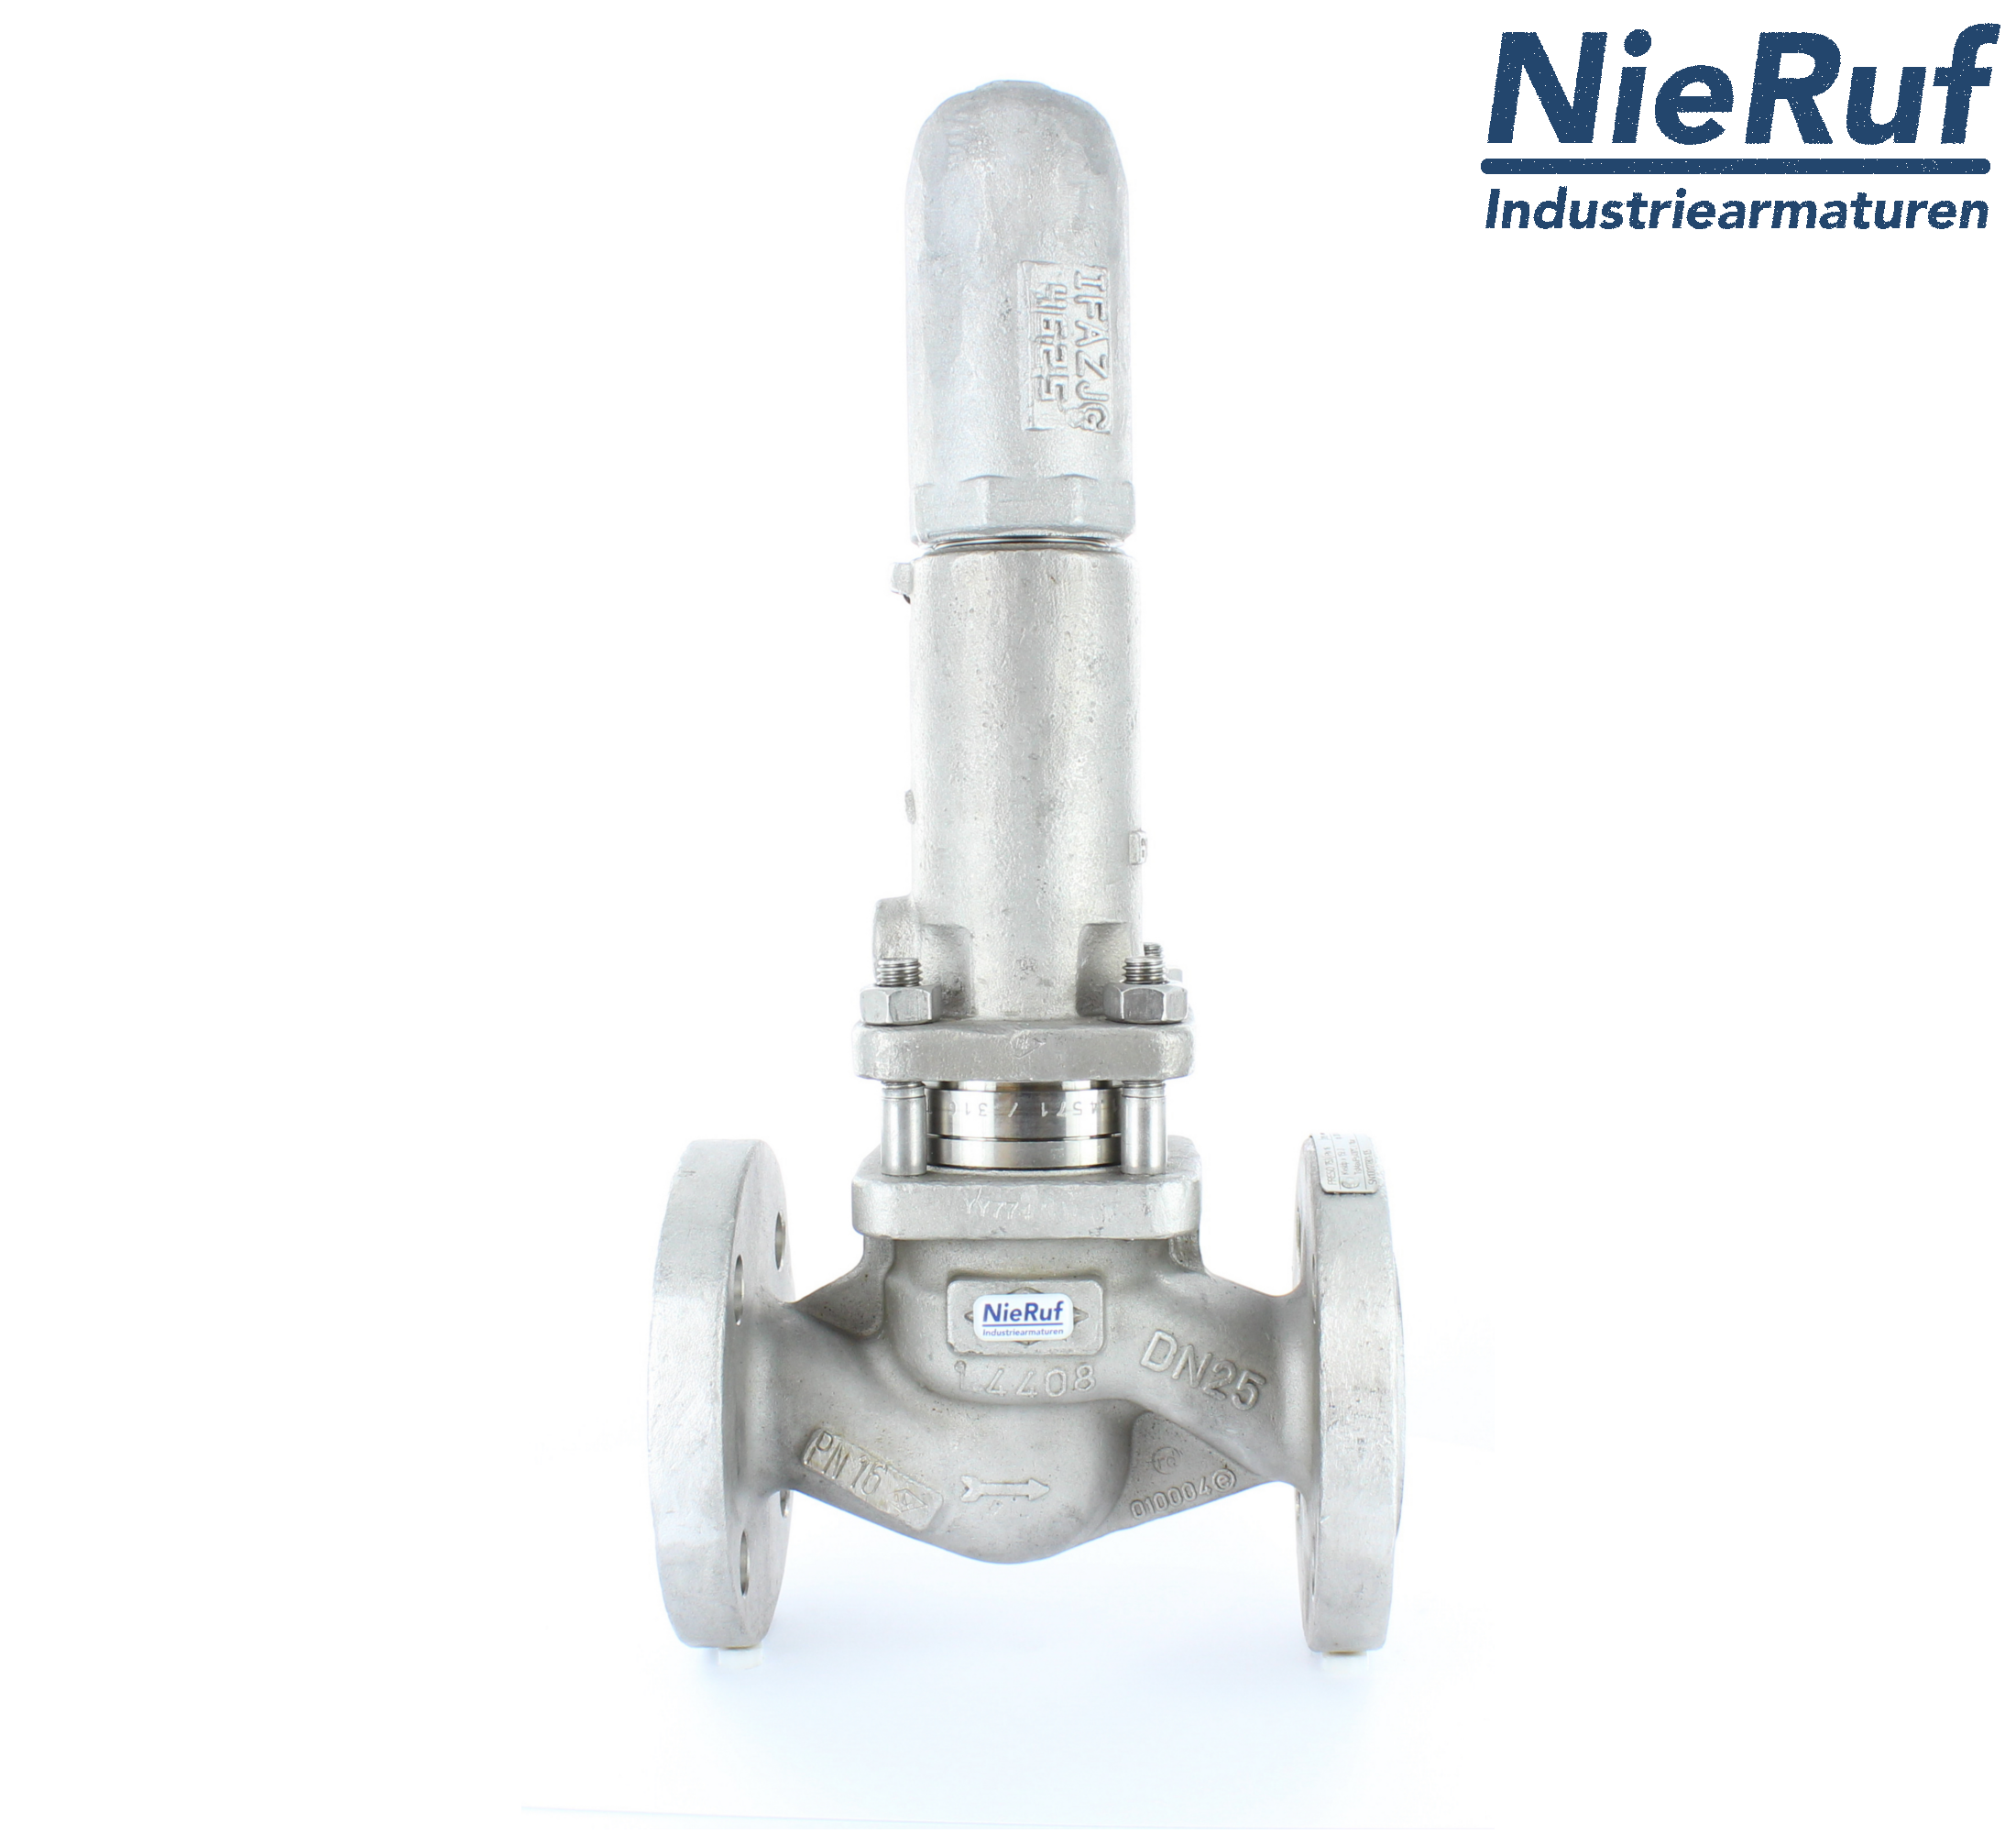 piston overflow valve DN 50 UV13 cast iron 1.0619+N 2,0 - 5,0 bar